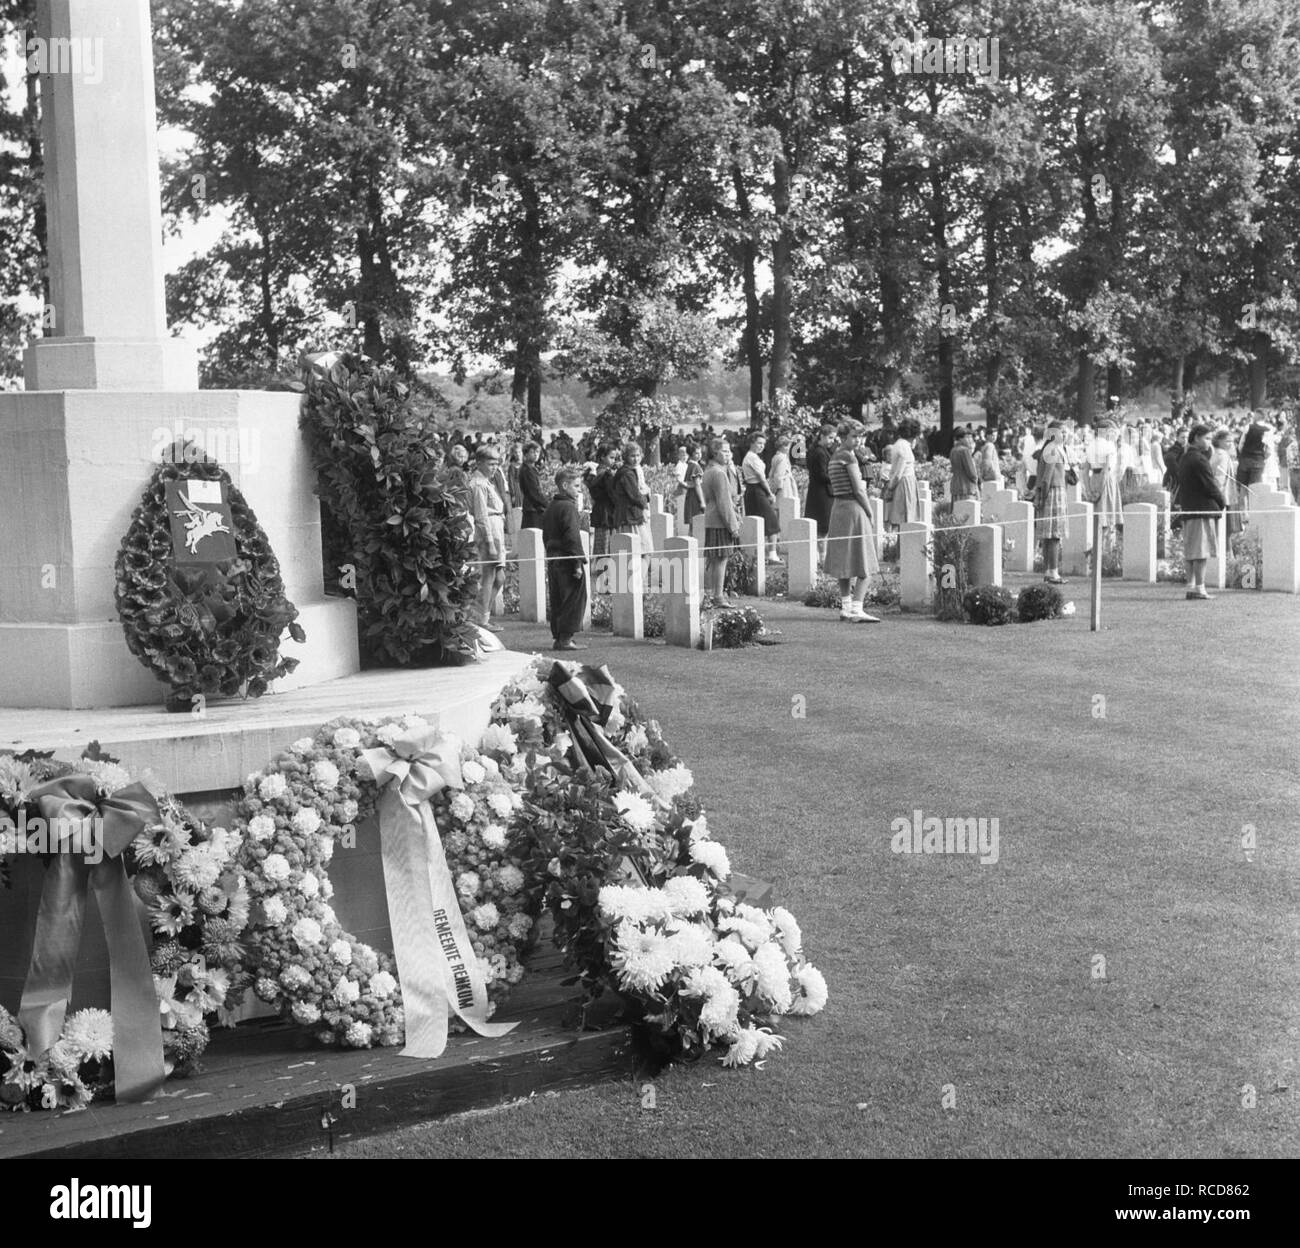 Airborne-herdenking in Oosterbeek, Bestanddeelnr 905-3116. Stock Photo